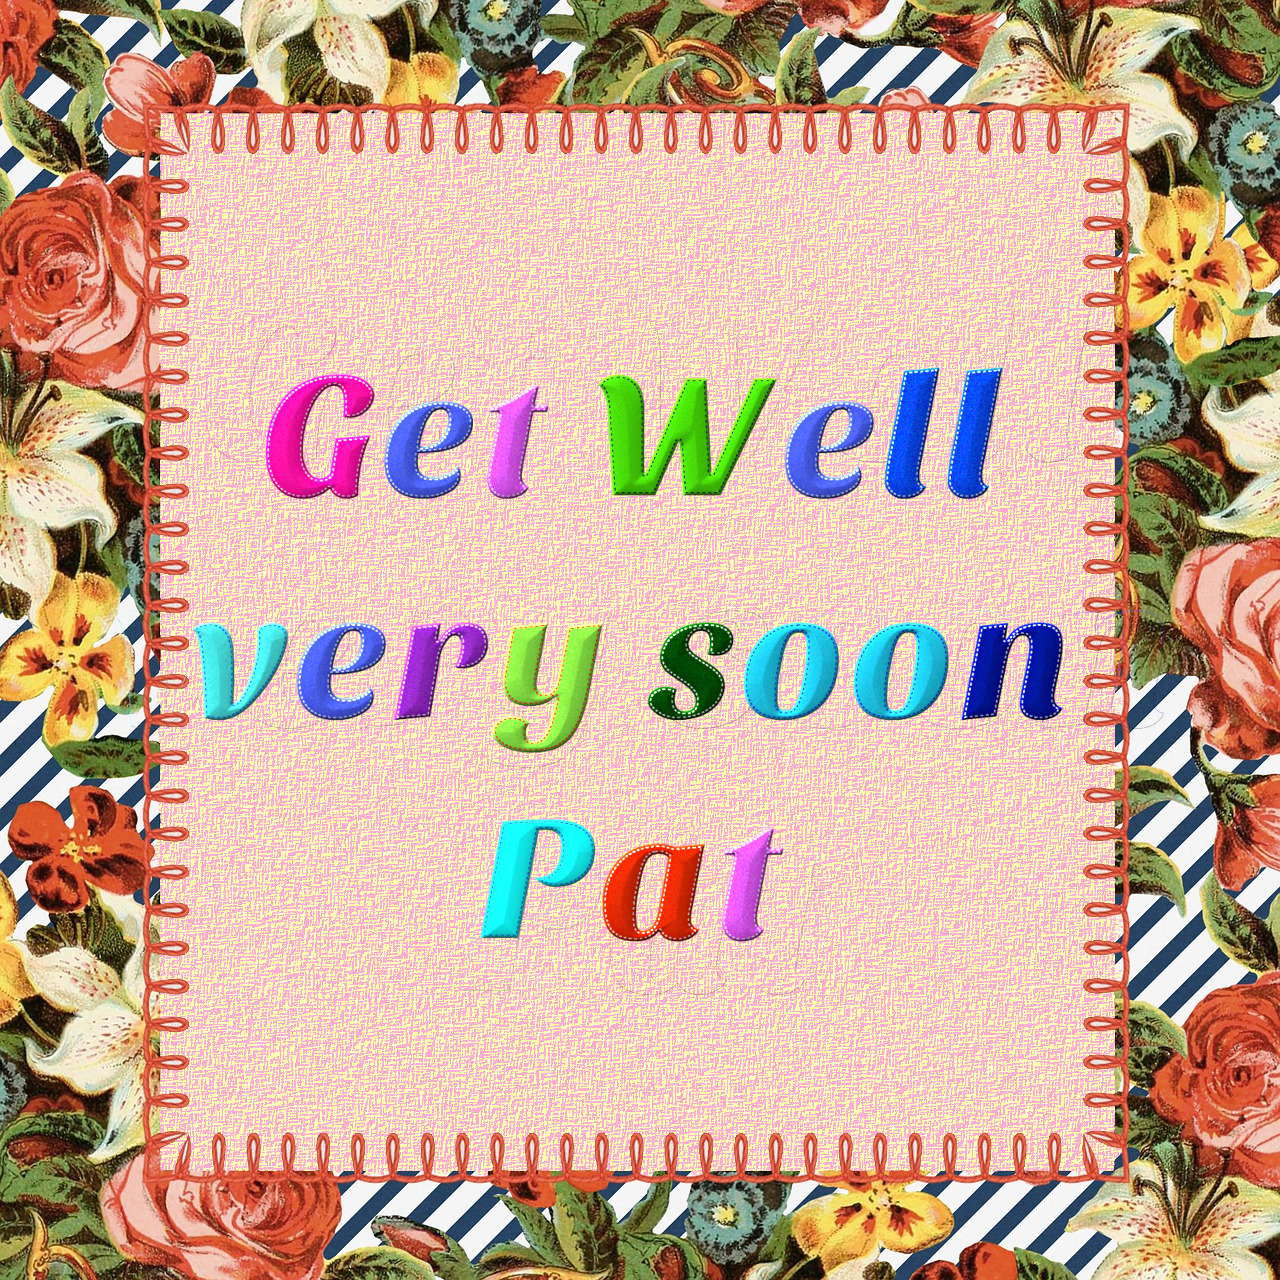 Get Well_Pat.jpg